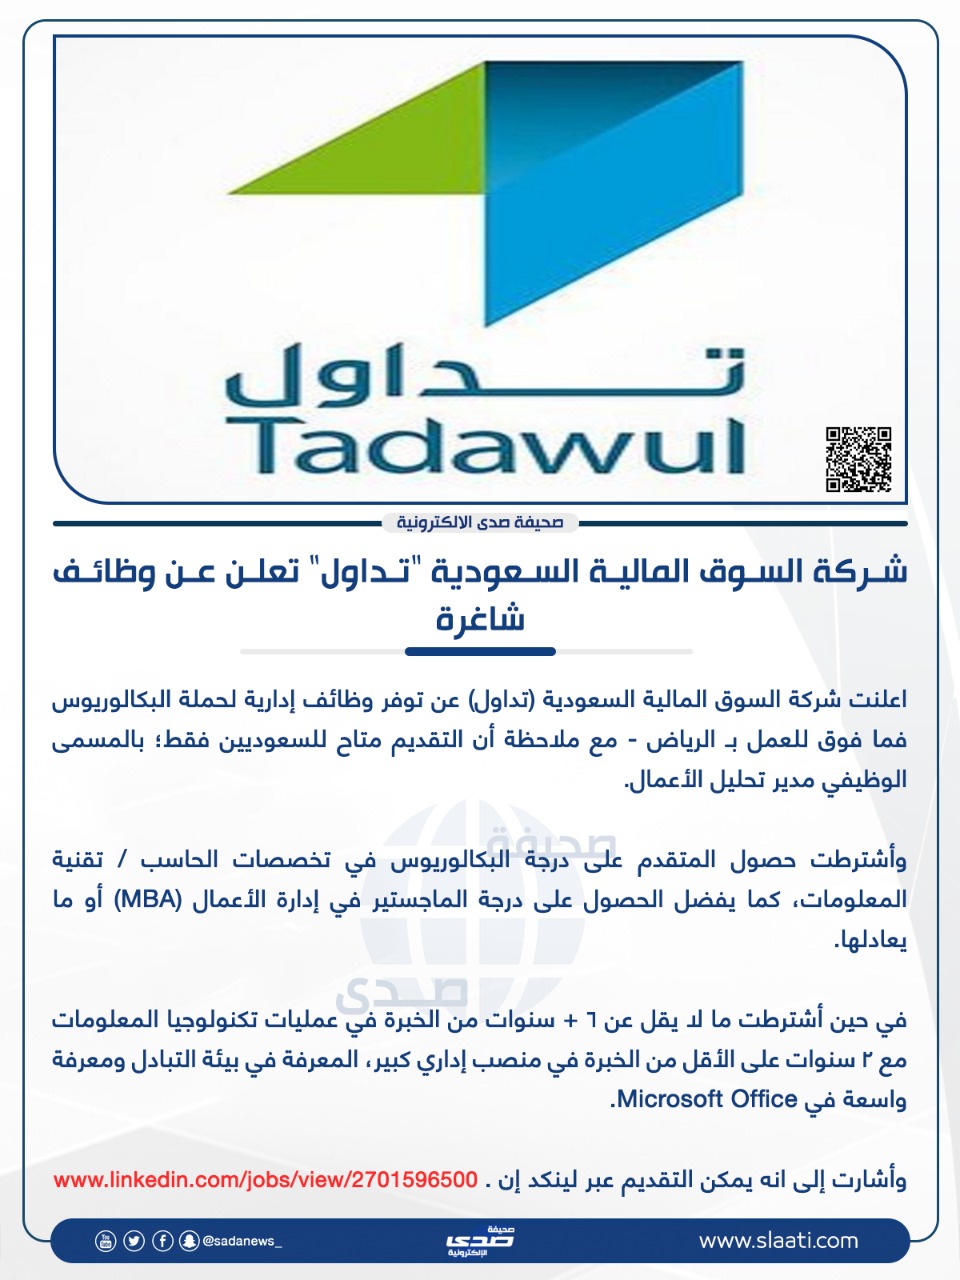 صحيفة صدى | شركة السوق المالية السعودية "تداول" تعلن عن وظائف شاغرة #وظائف  #صدى